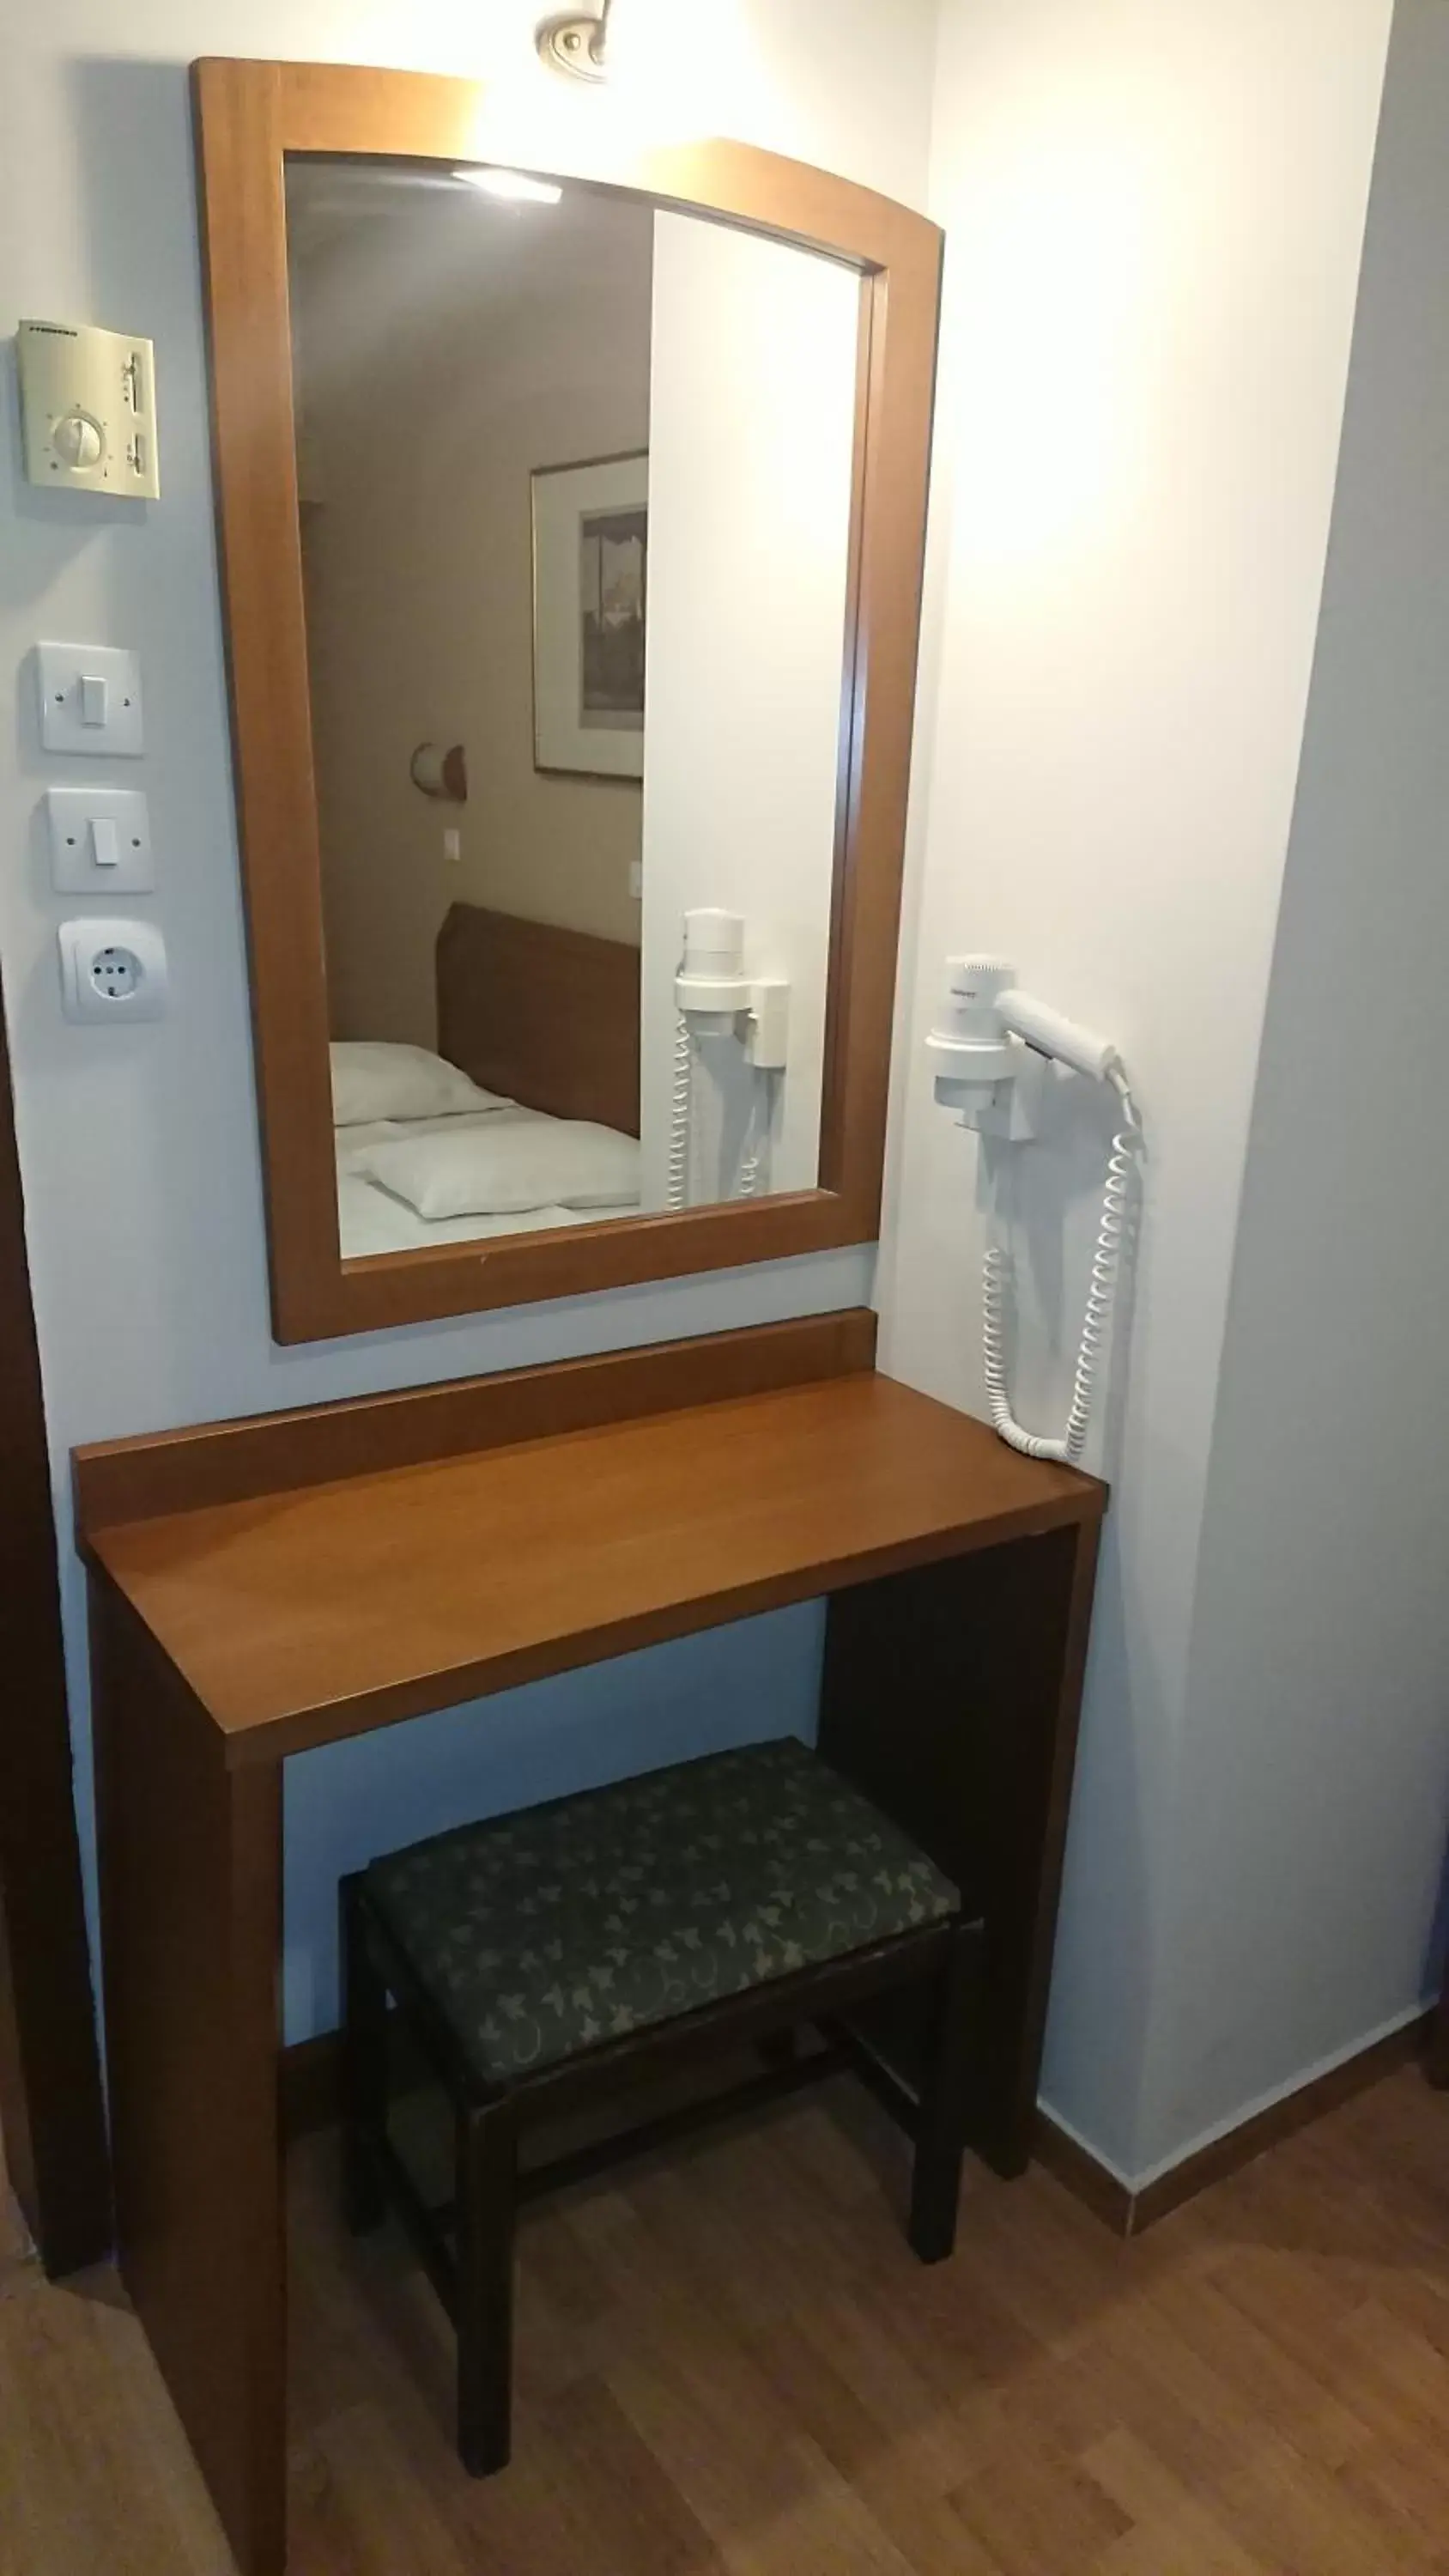 Bathroom in Economy Hotel